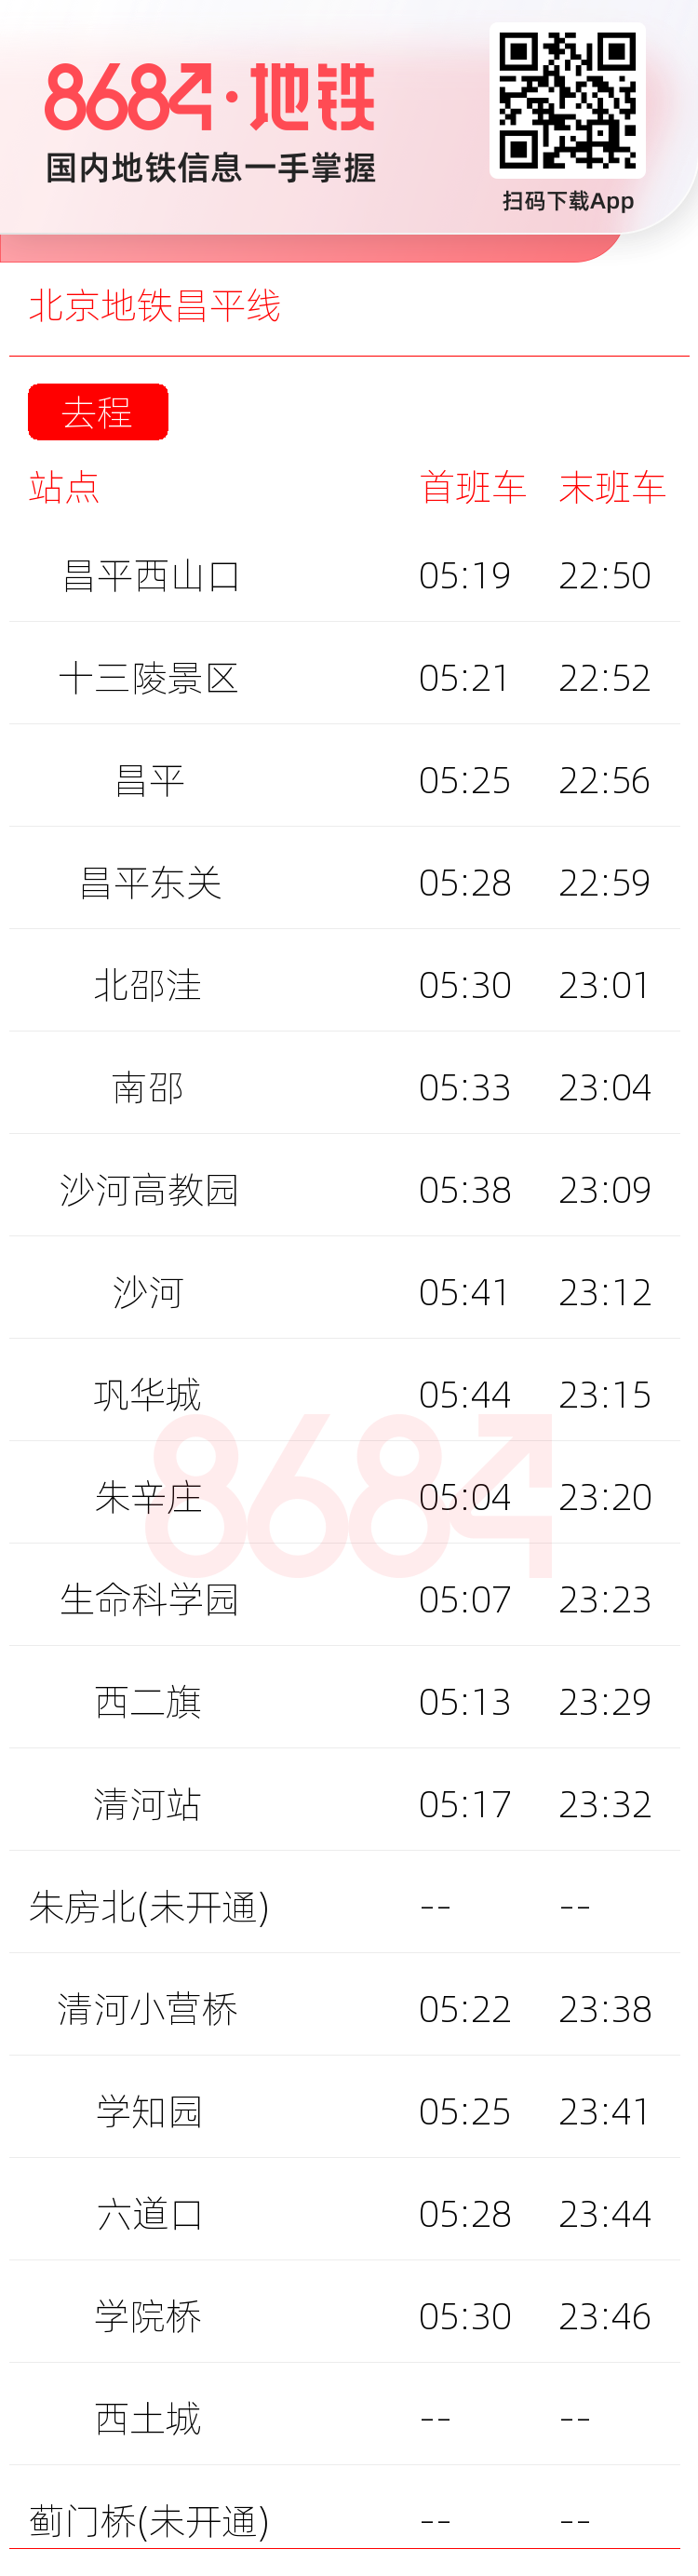 北京地铁昌平线运营时间表